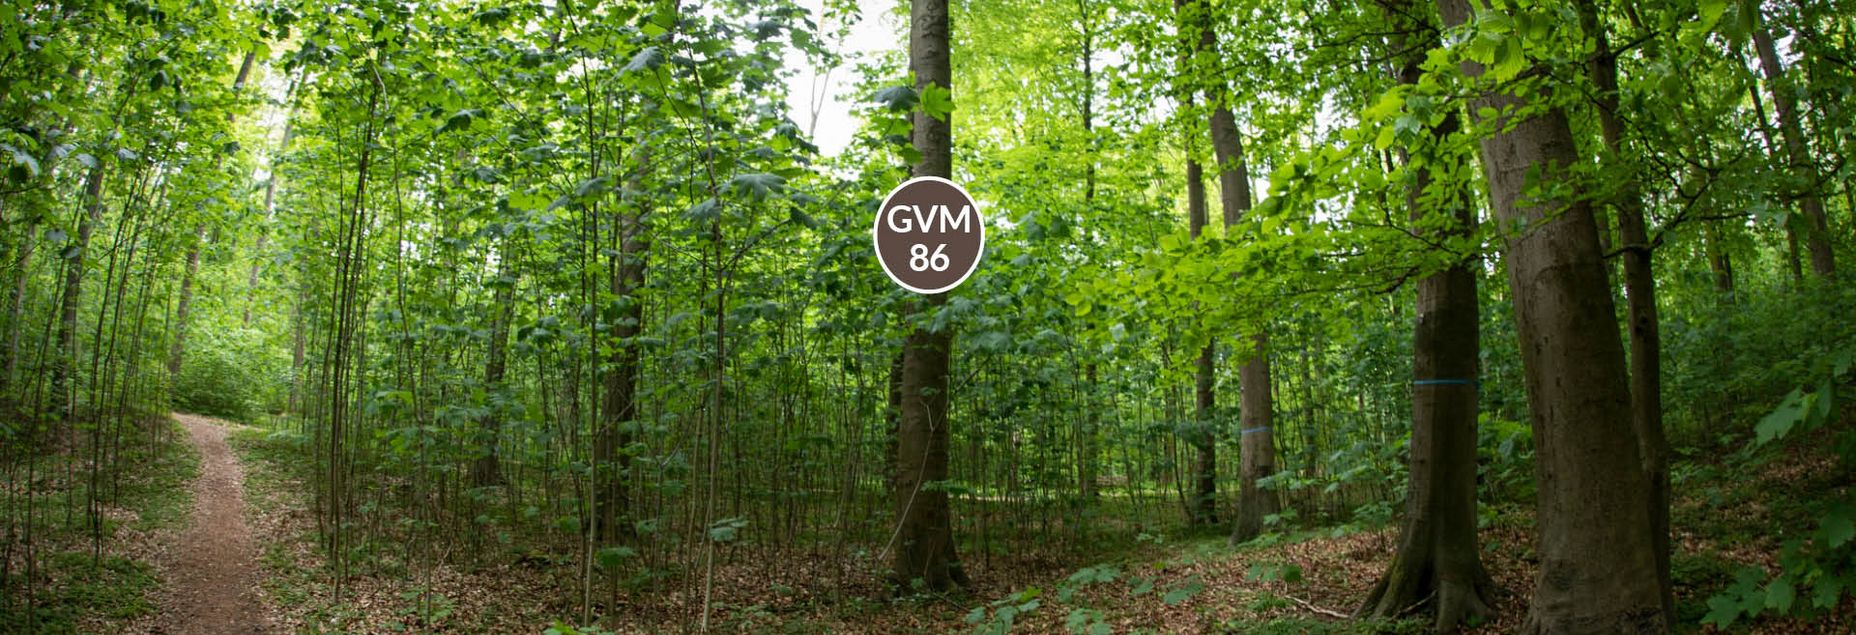 Baum GVM 86 - Fisheyeperspektive